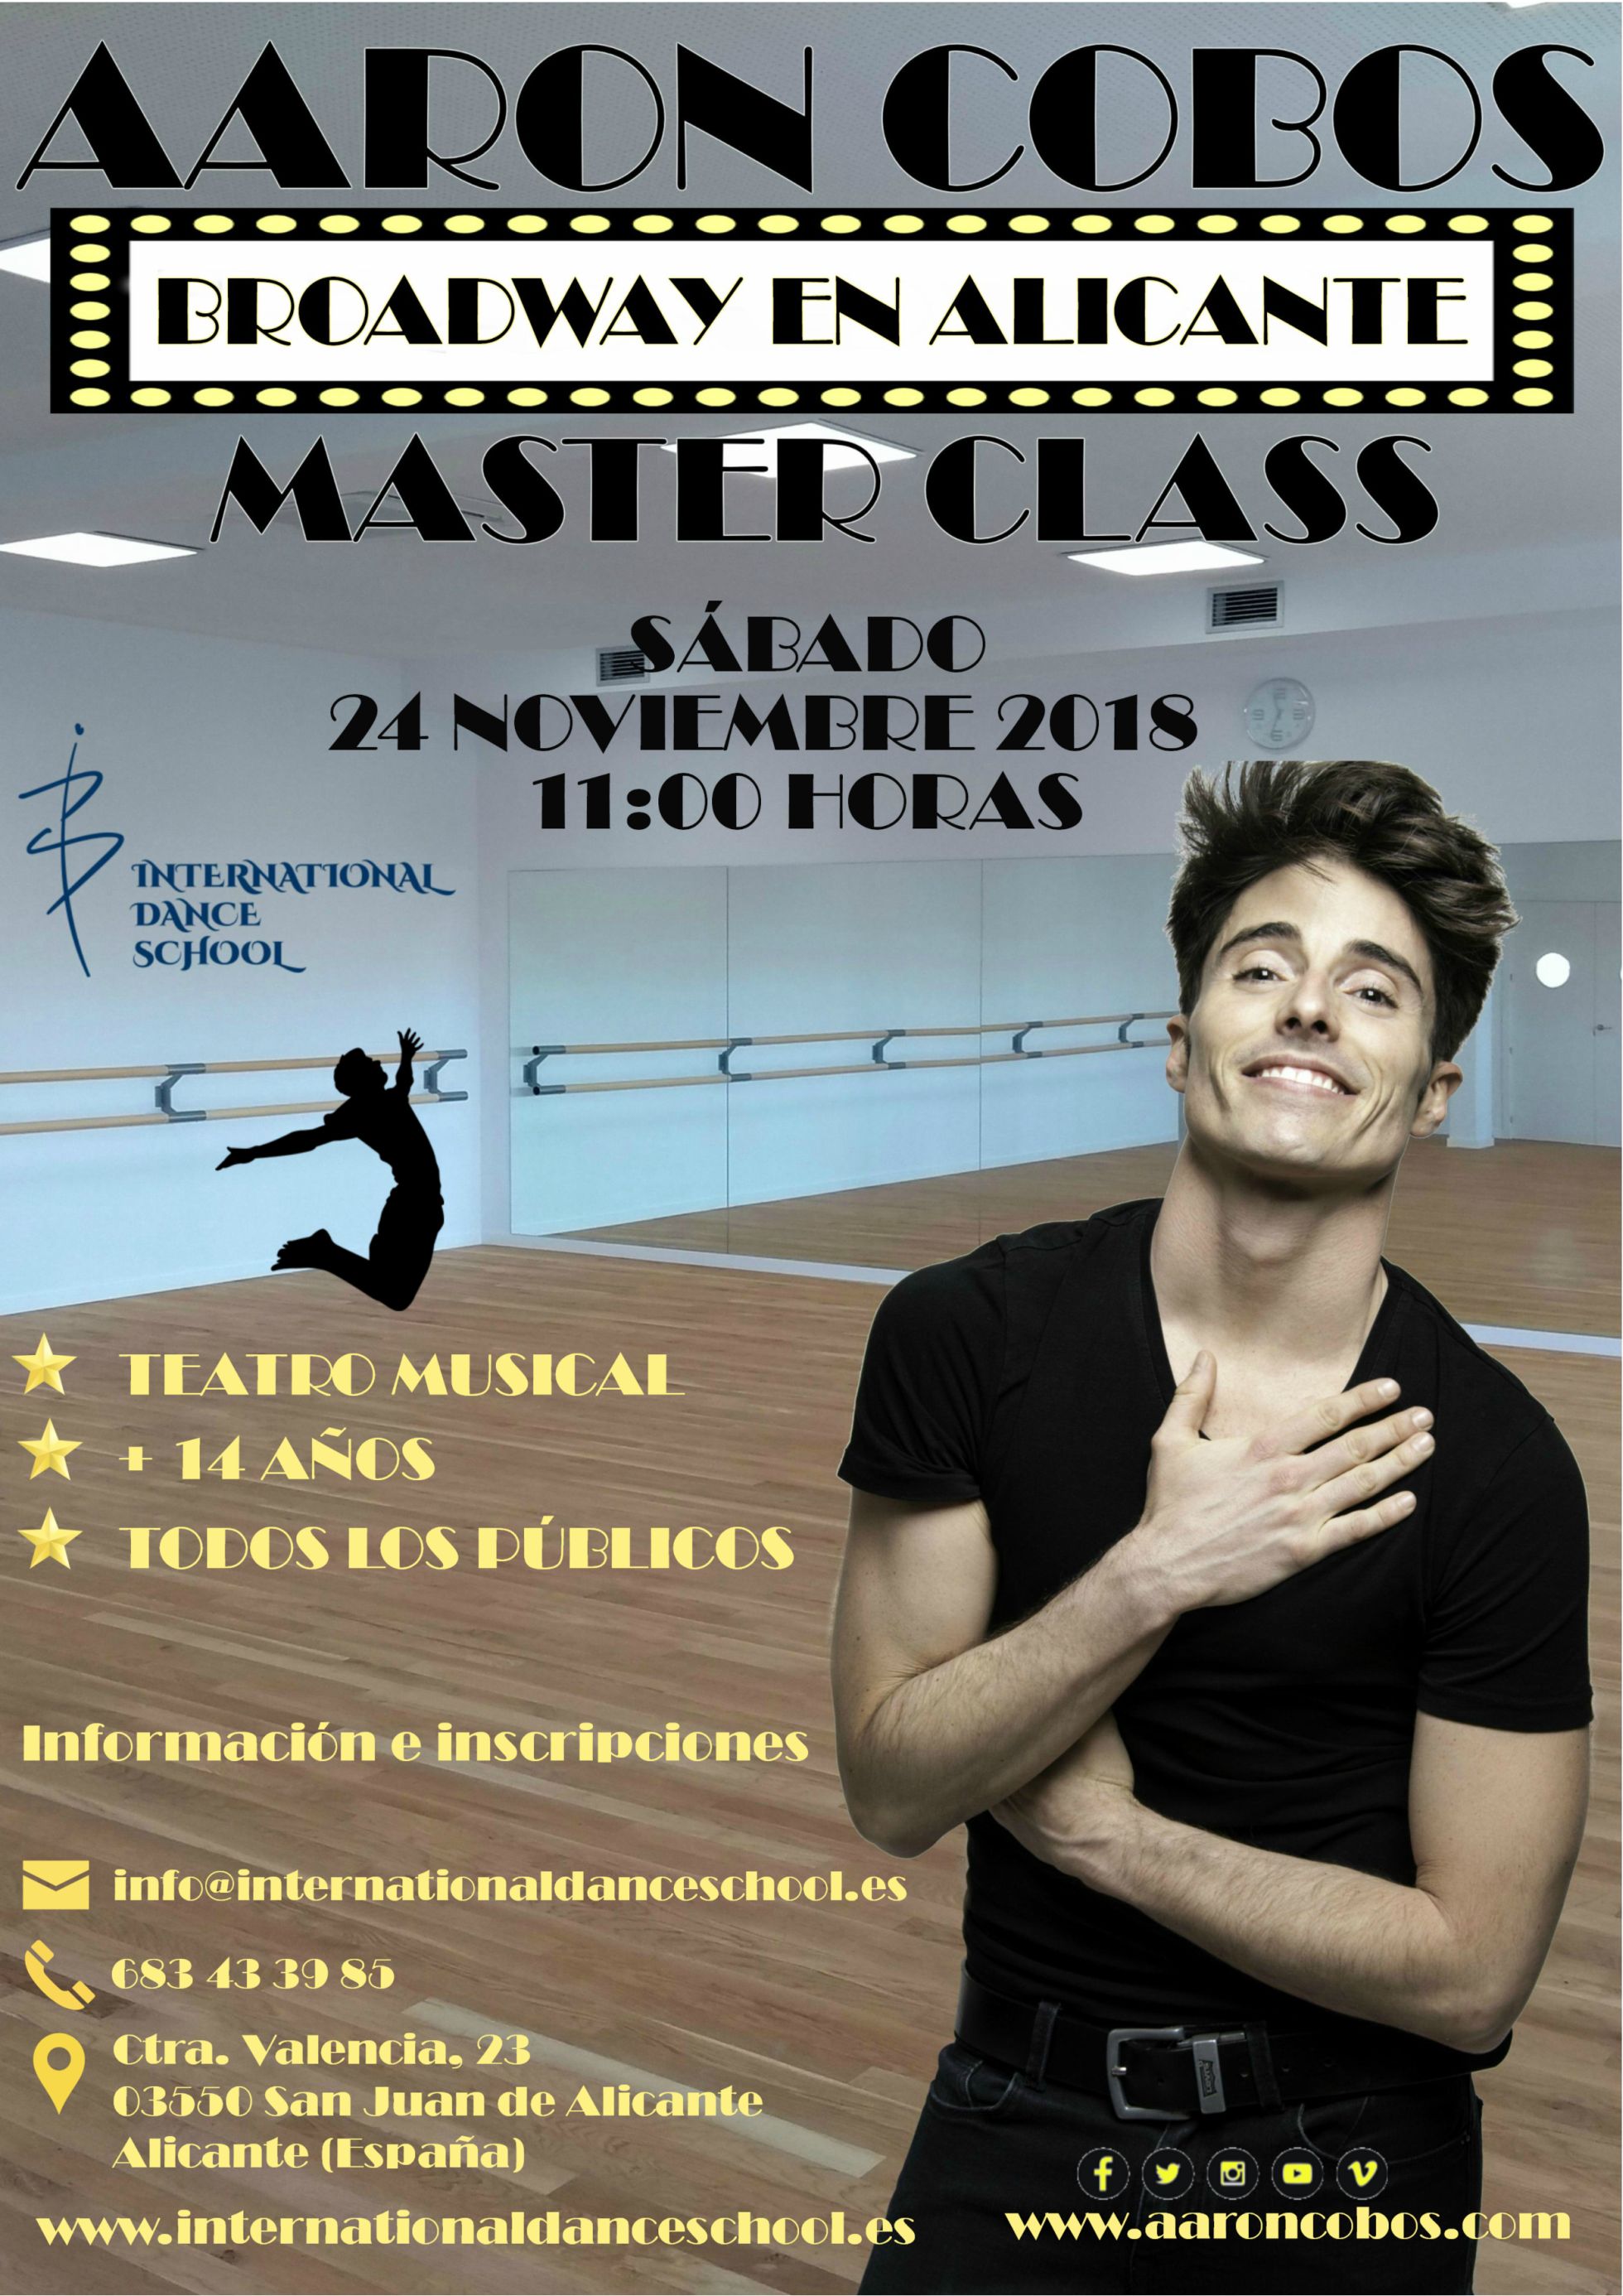 master class aaron cobos danza baile urban clásica española contemporánea teatro musical international dance school alicante cartel